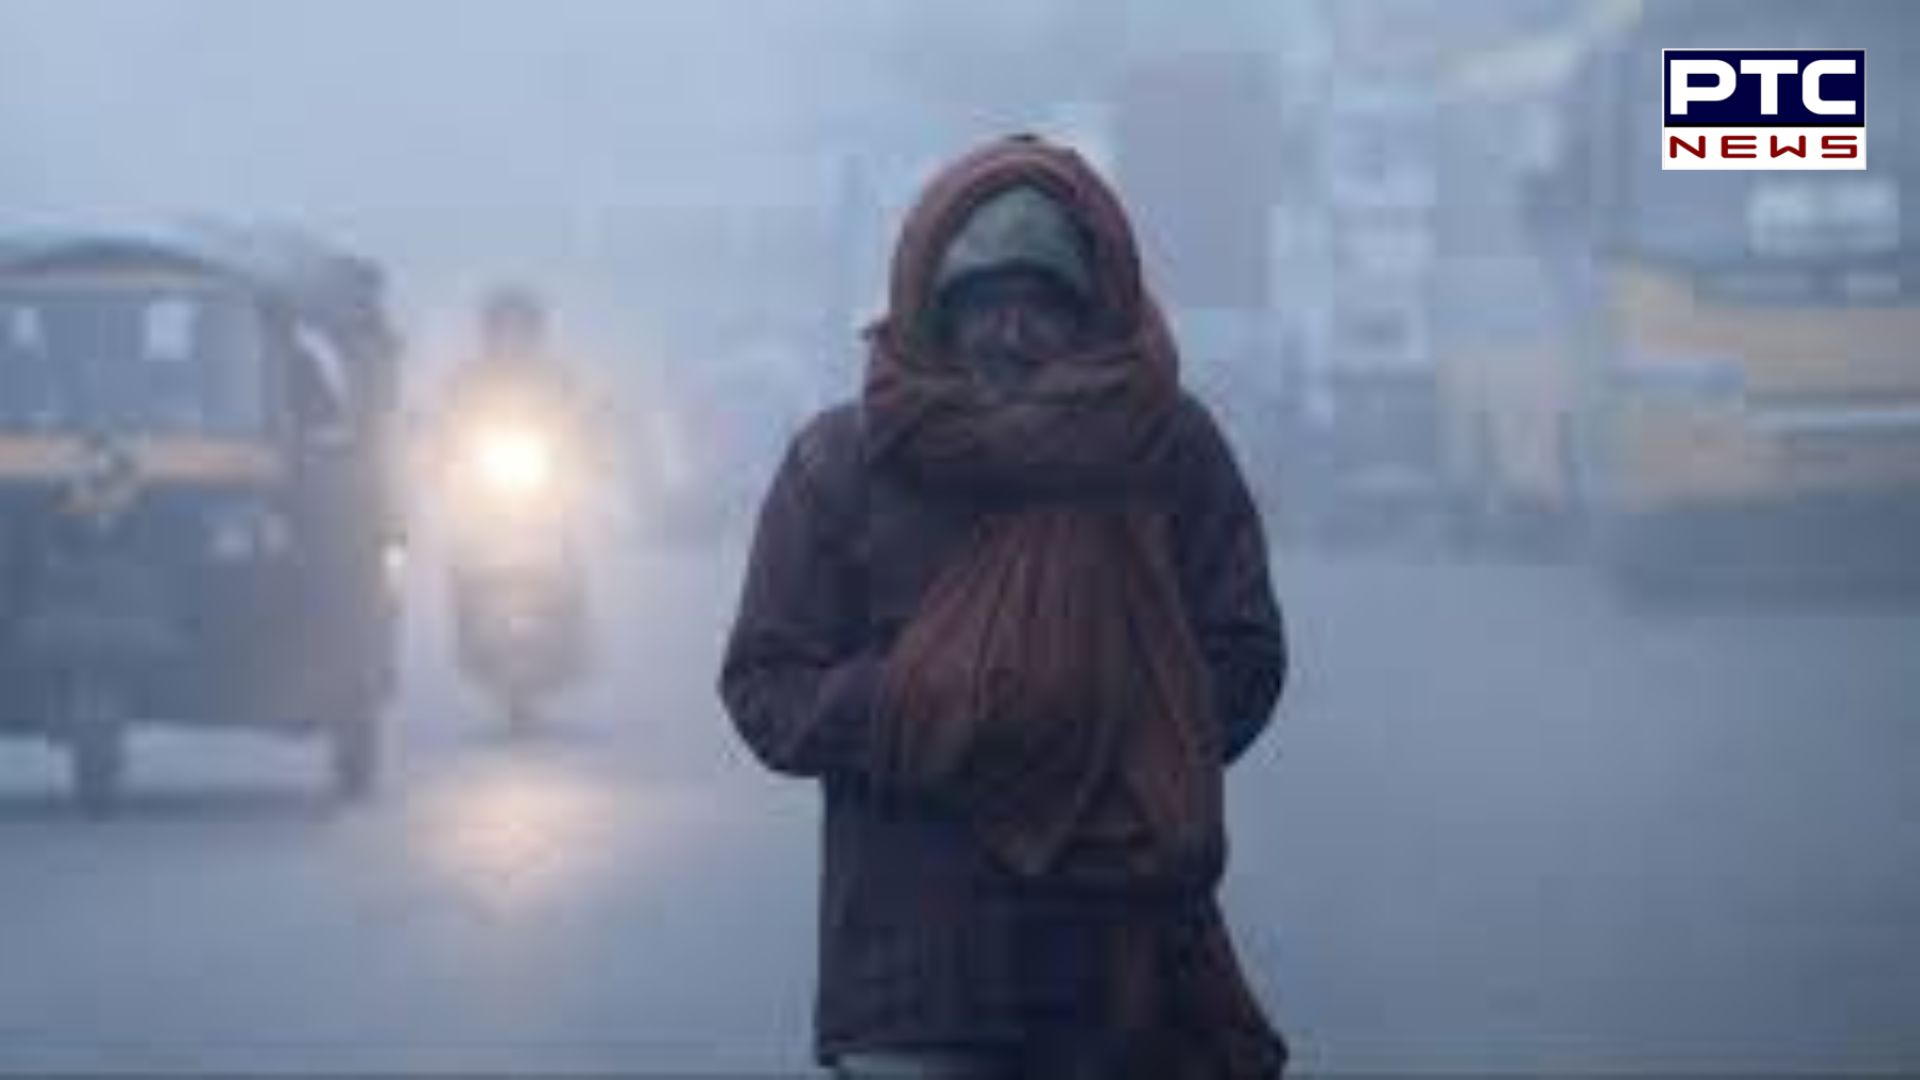 IMD Weather: ਪੰਜਾਬ-ਦਿੱਲੀ ’ਚ ਛਾਈ ਸੰਘਣੀ ਧੁੰਦ, ਇਨ੍ਹਾਂ ਸੂਬਿਆਂ ’ਚ ਹੋਵੇਗੀ ਬਰਸਾਤ